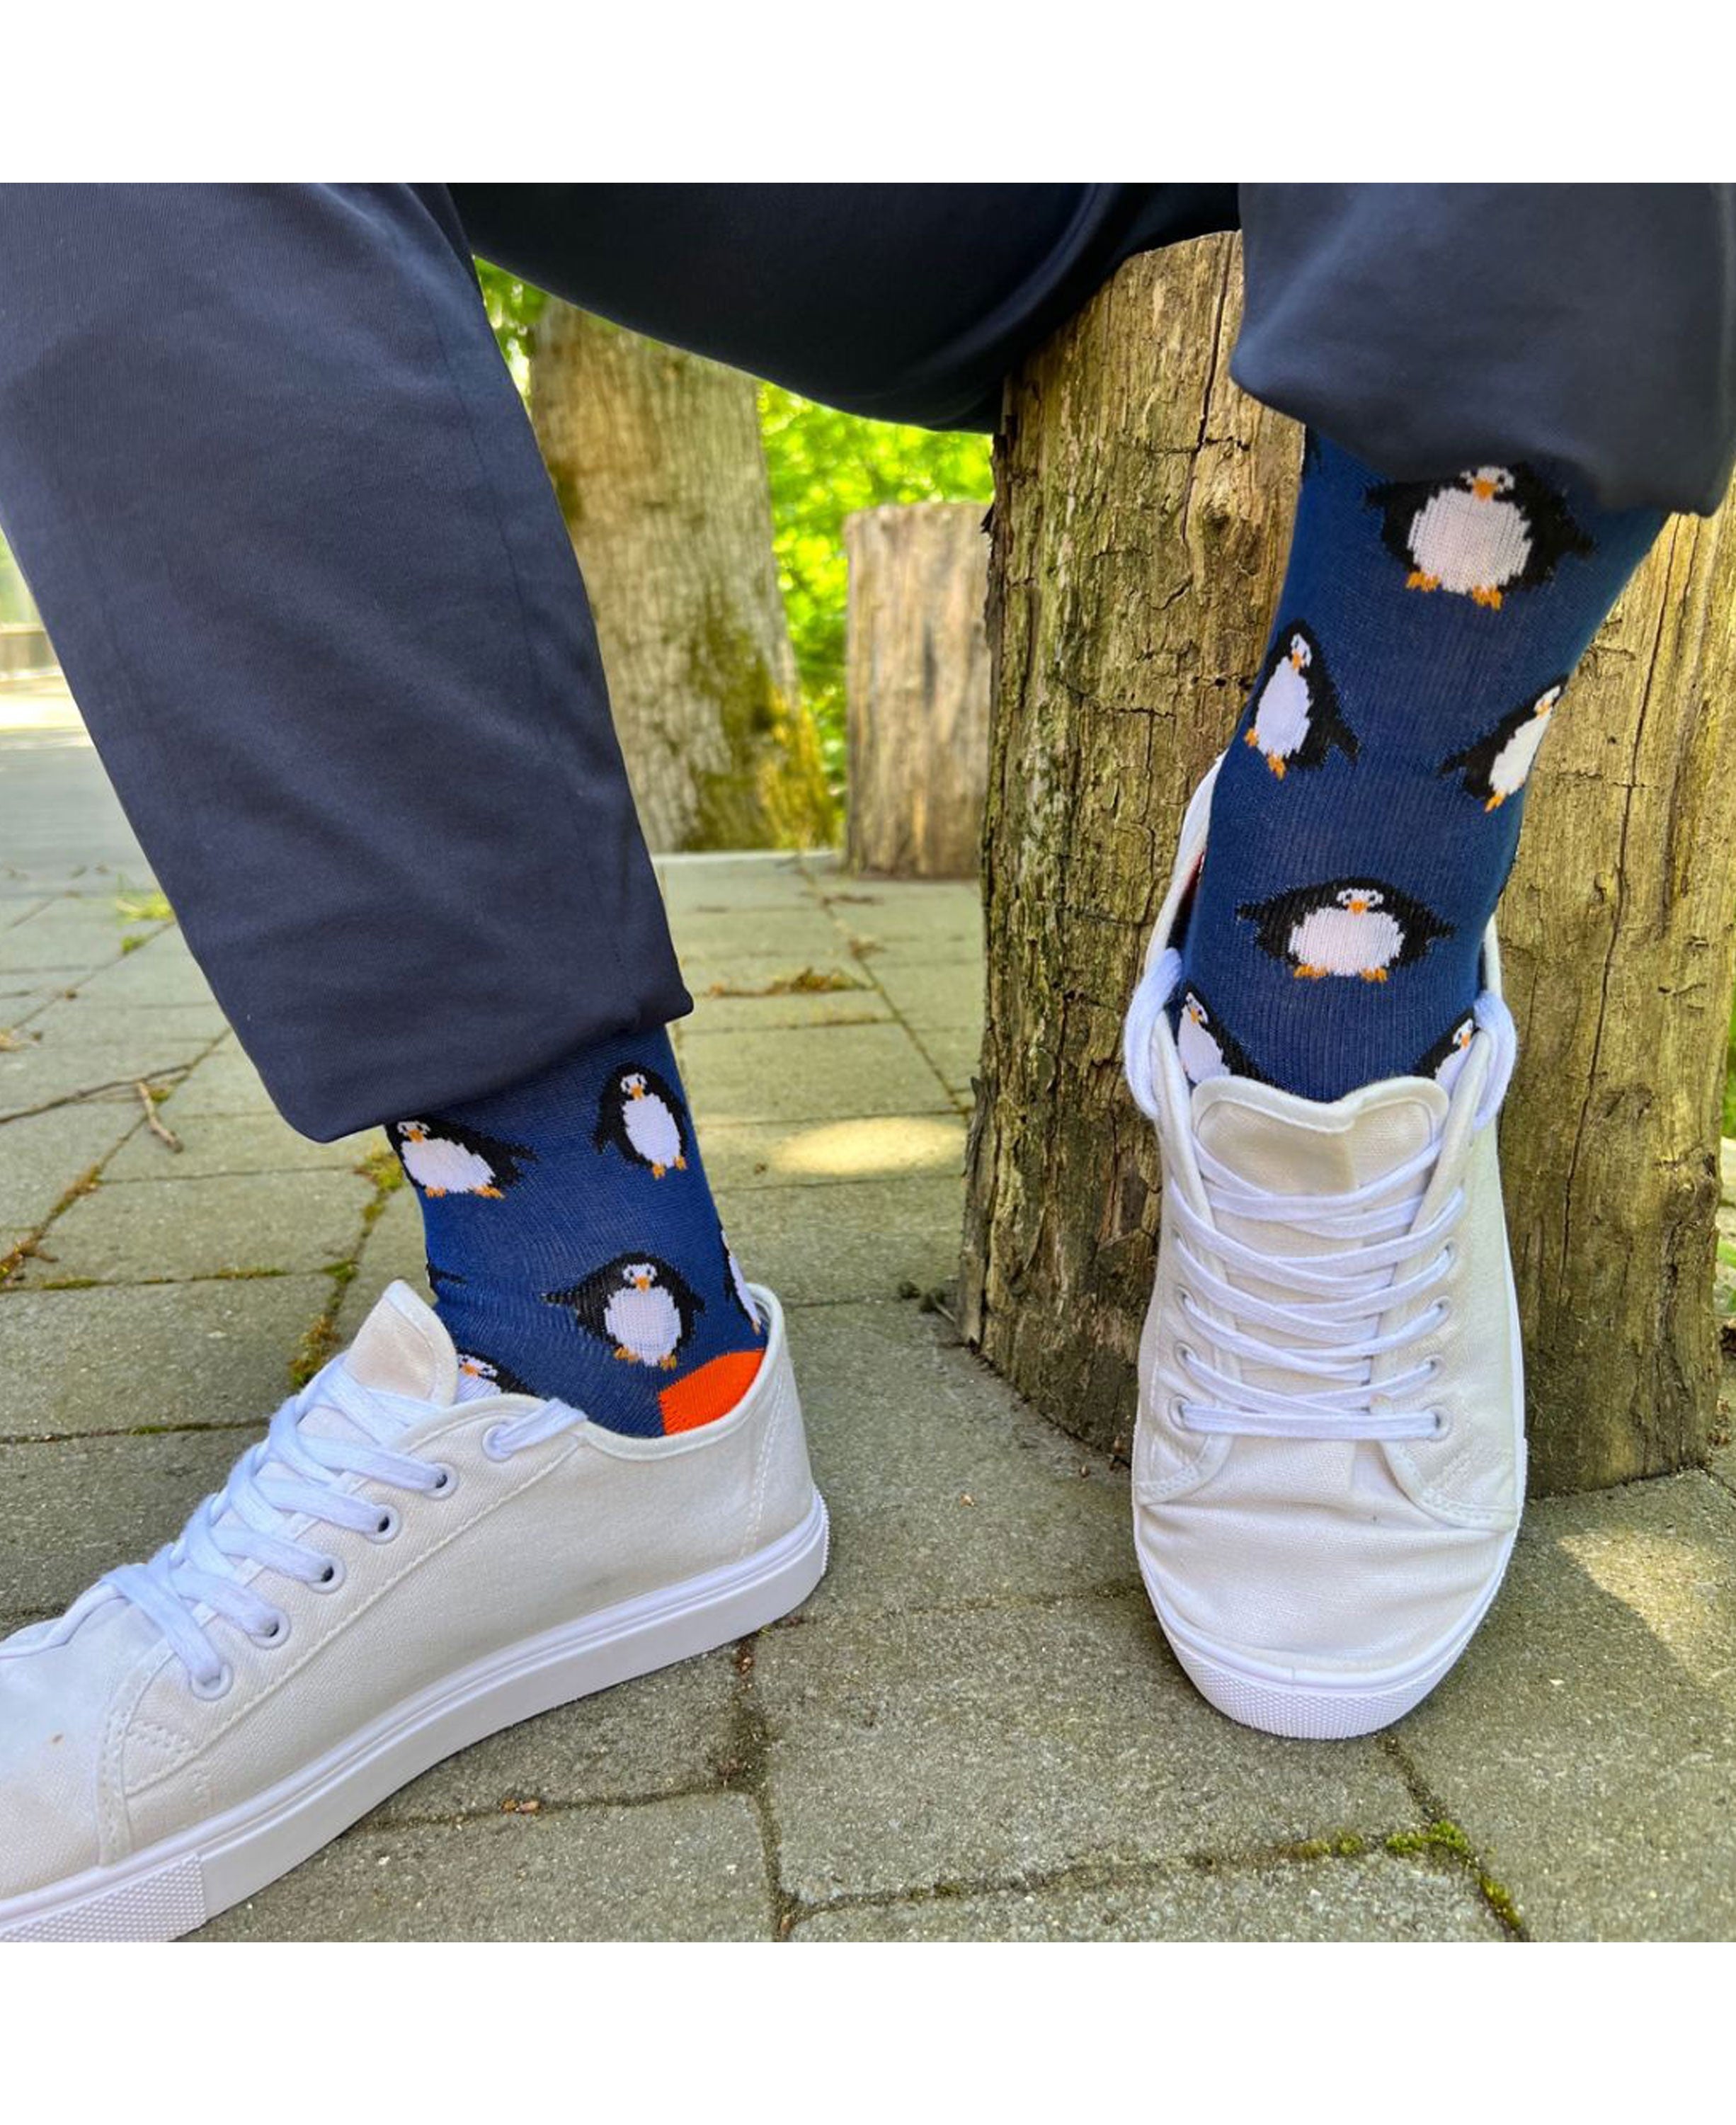 Patterned Socks - Navy Penguin